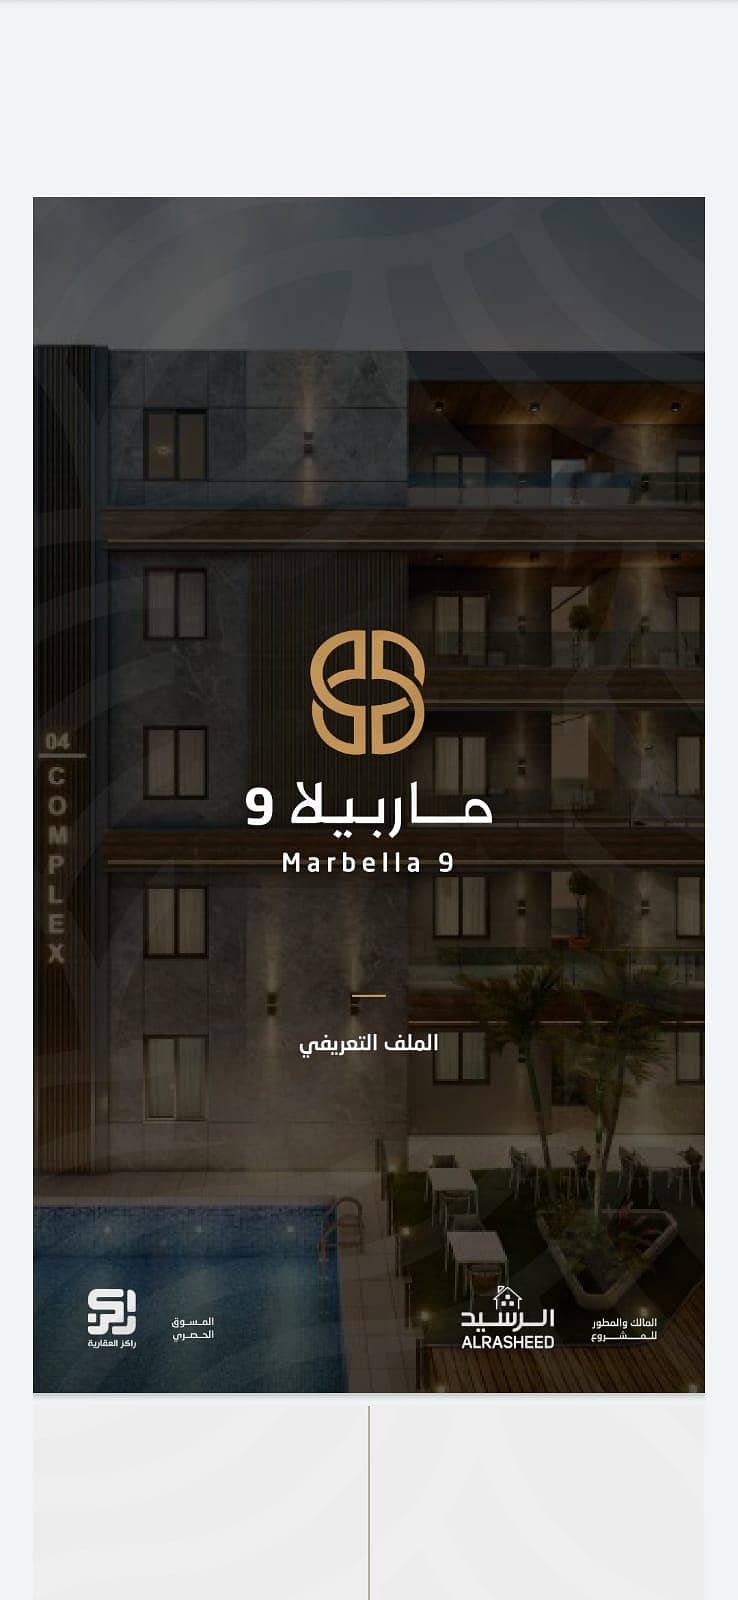 For sale apartments of different sizes Marbella 9 Al Hamra, Al Khobar | 133 sqm